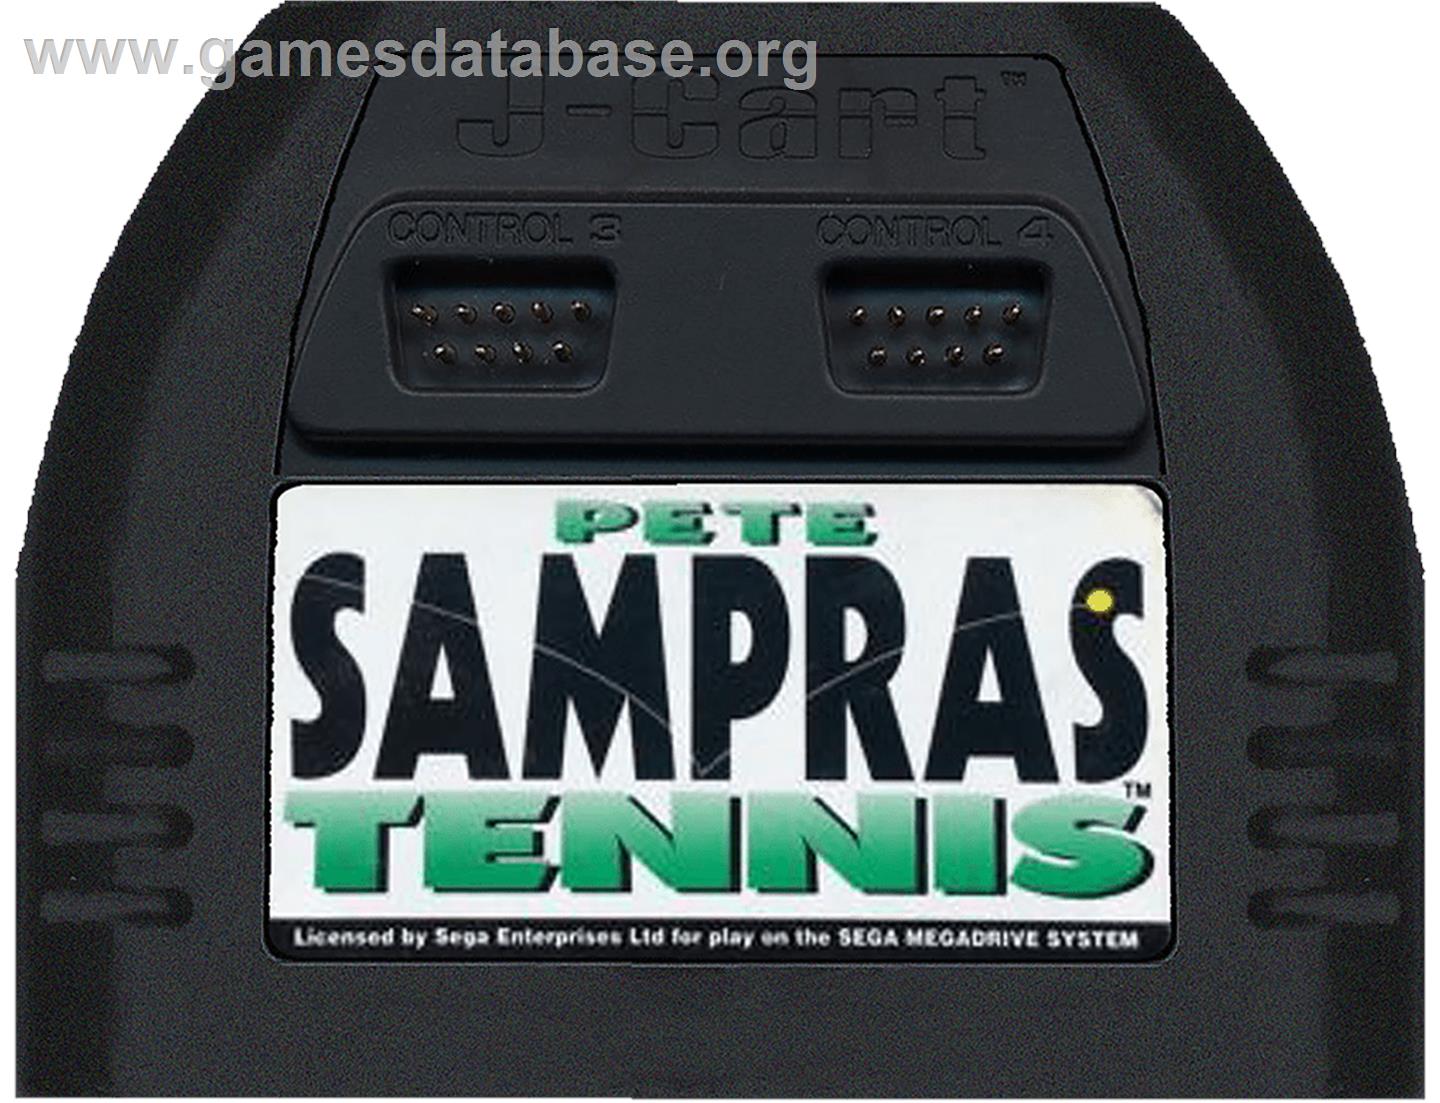 Pete Sampras Tennis - Sega Genesis - Artwork - Cartridge